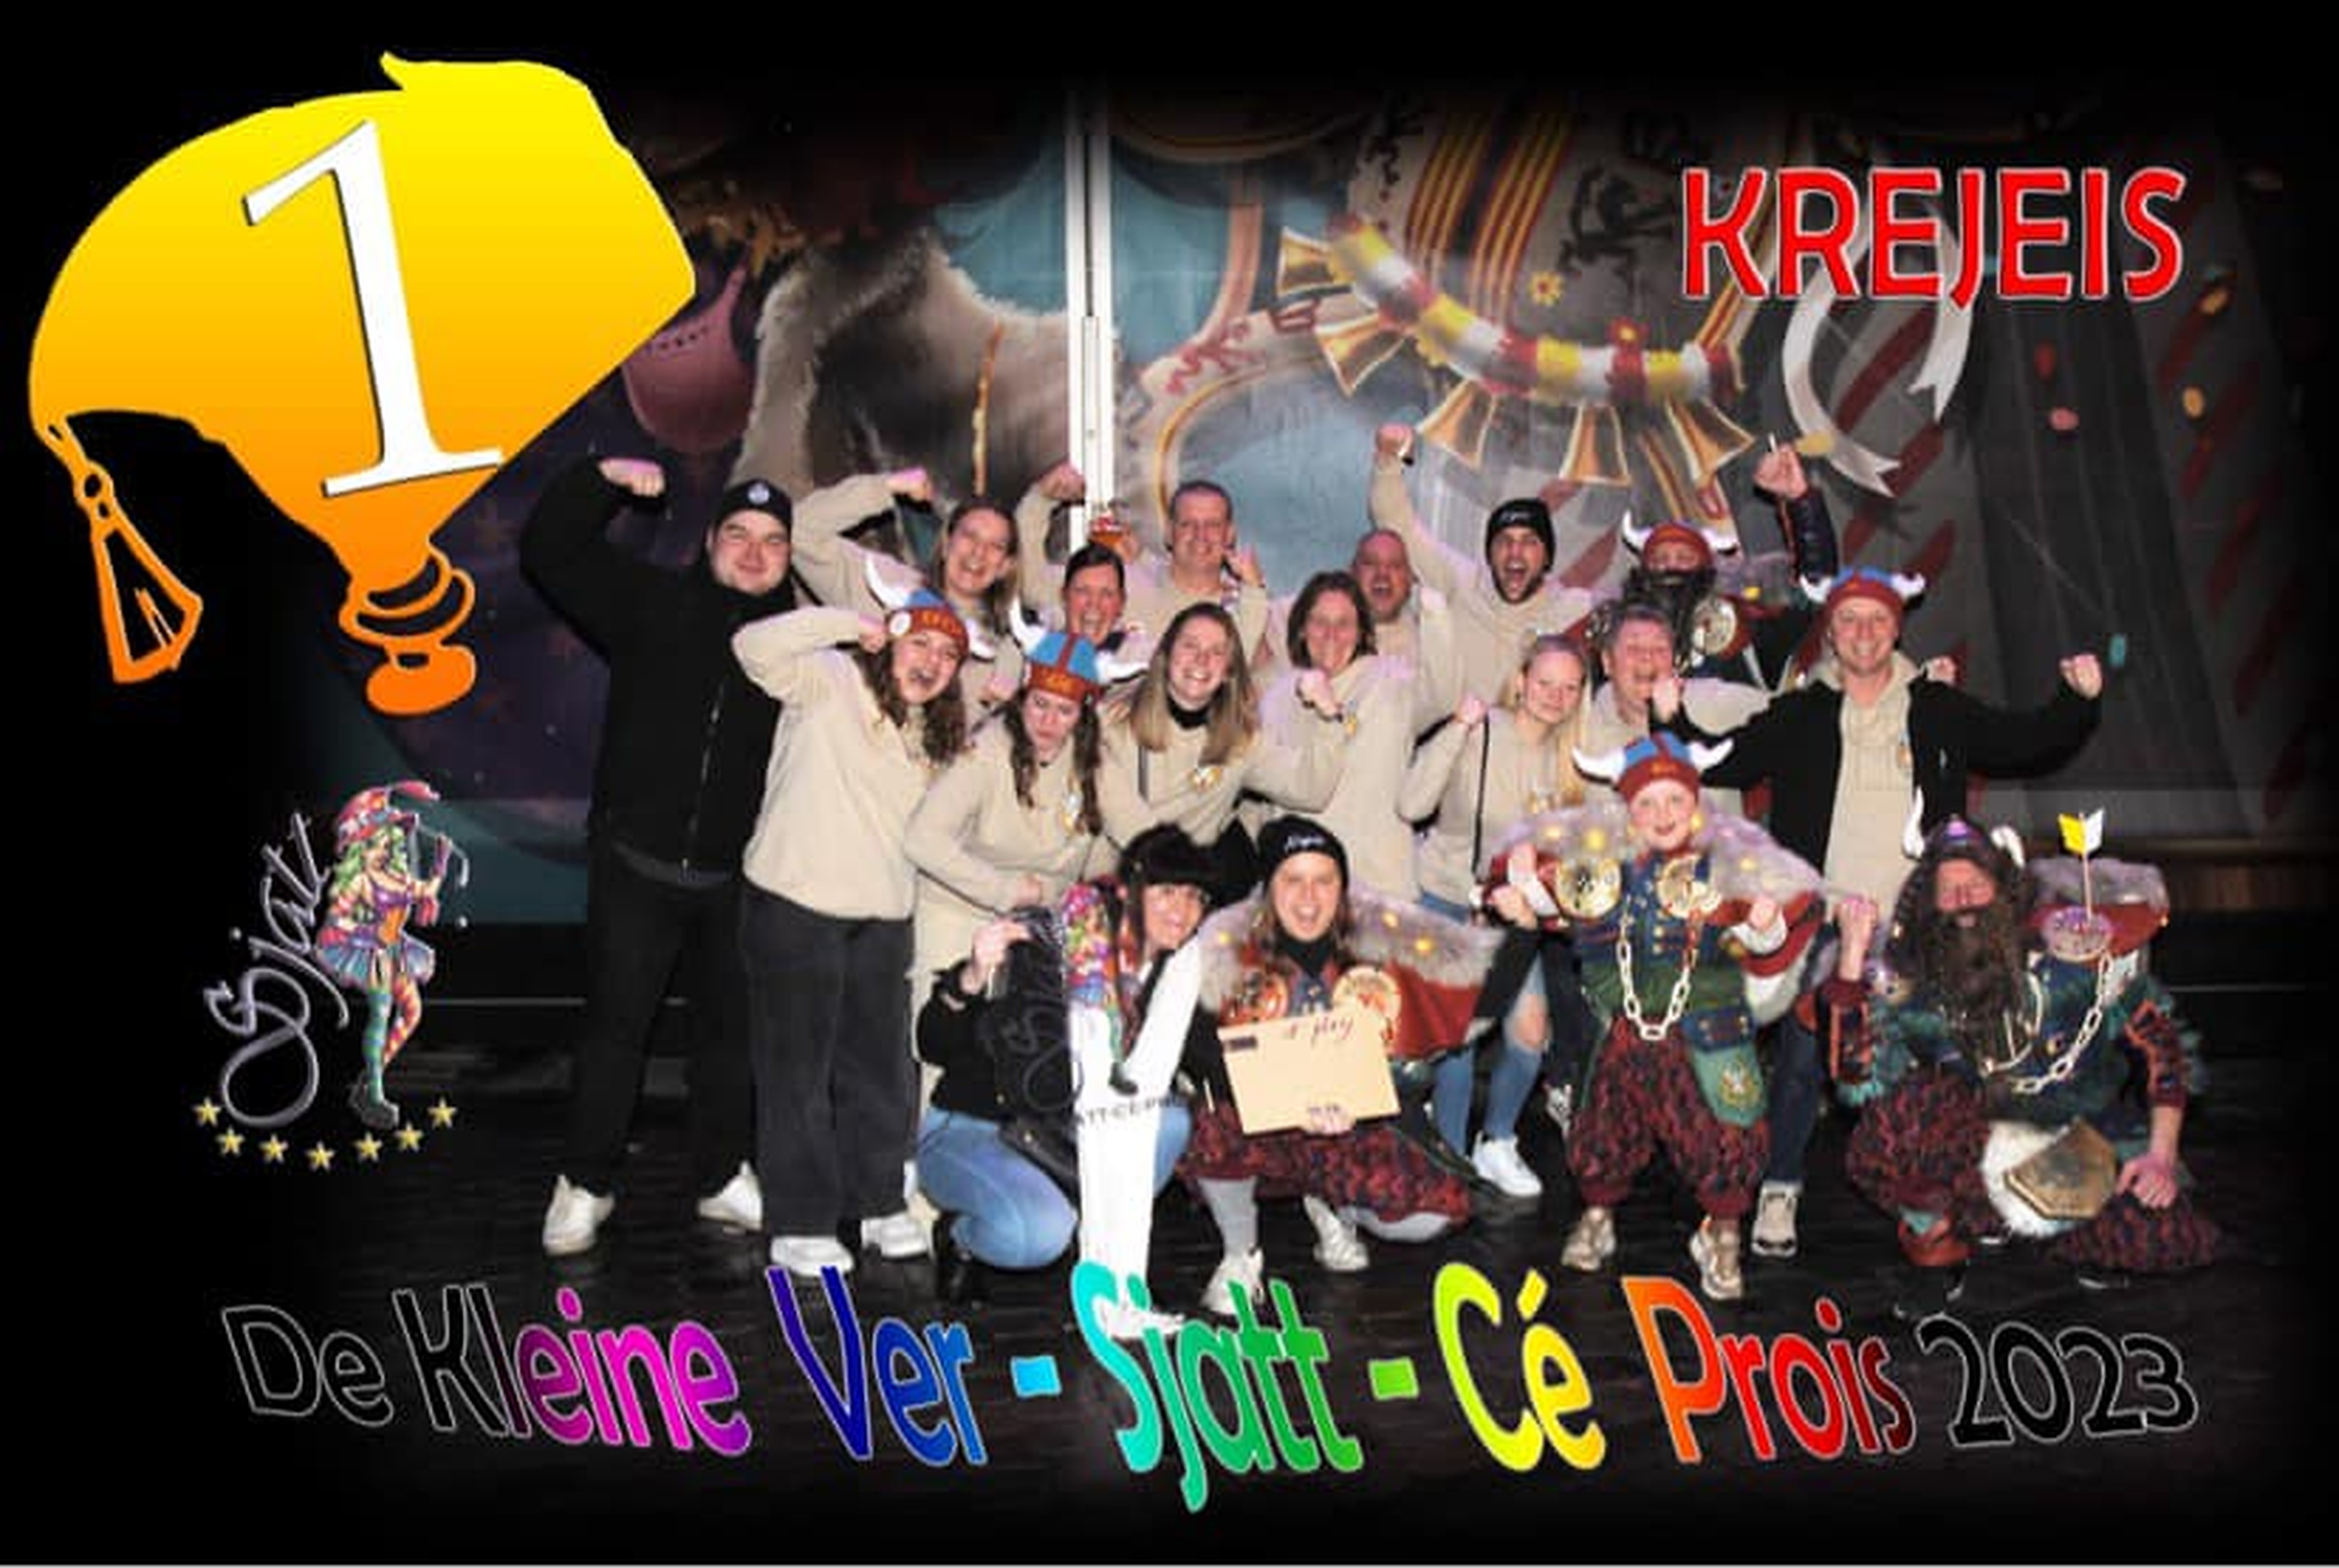 
Aalst Carnaval 2023 - Sjatt-Friends hielden de 4e Prijsuitreiking van de 'Kleine Ver-Sjatt-Cé Prois'!
